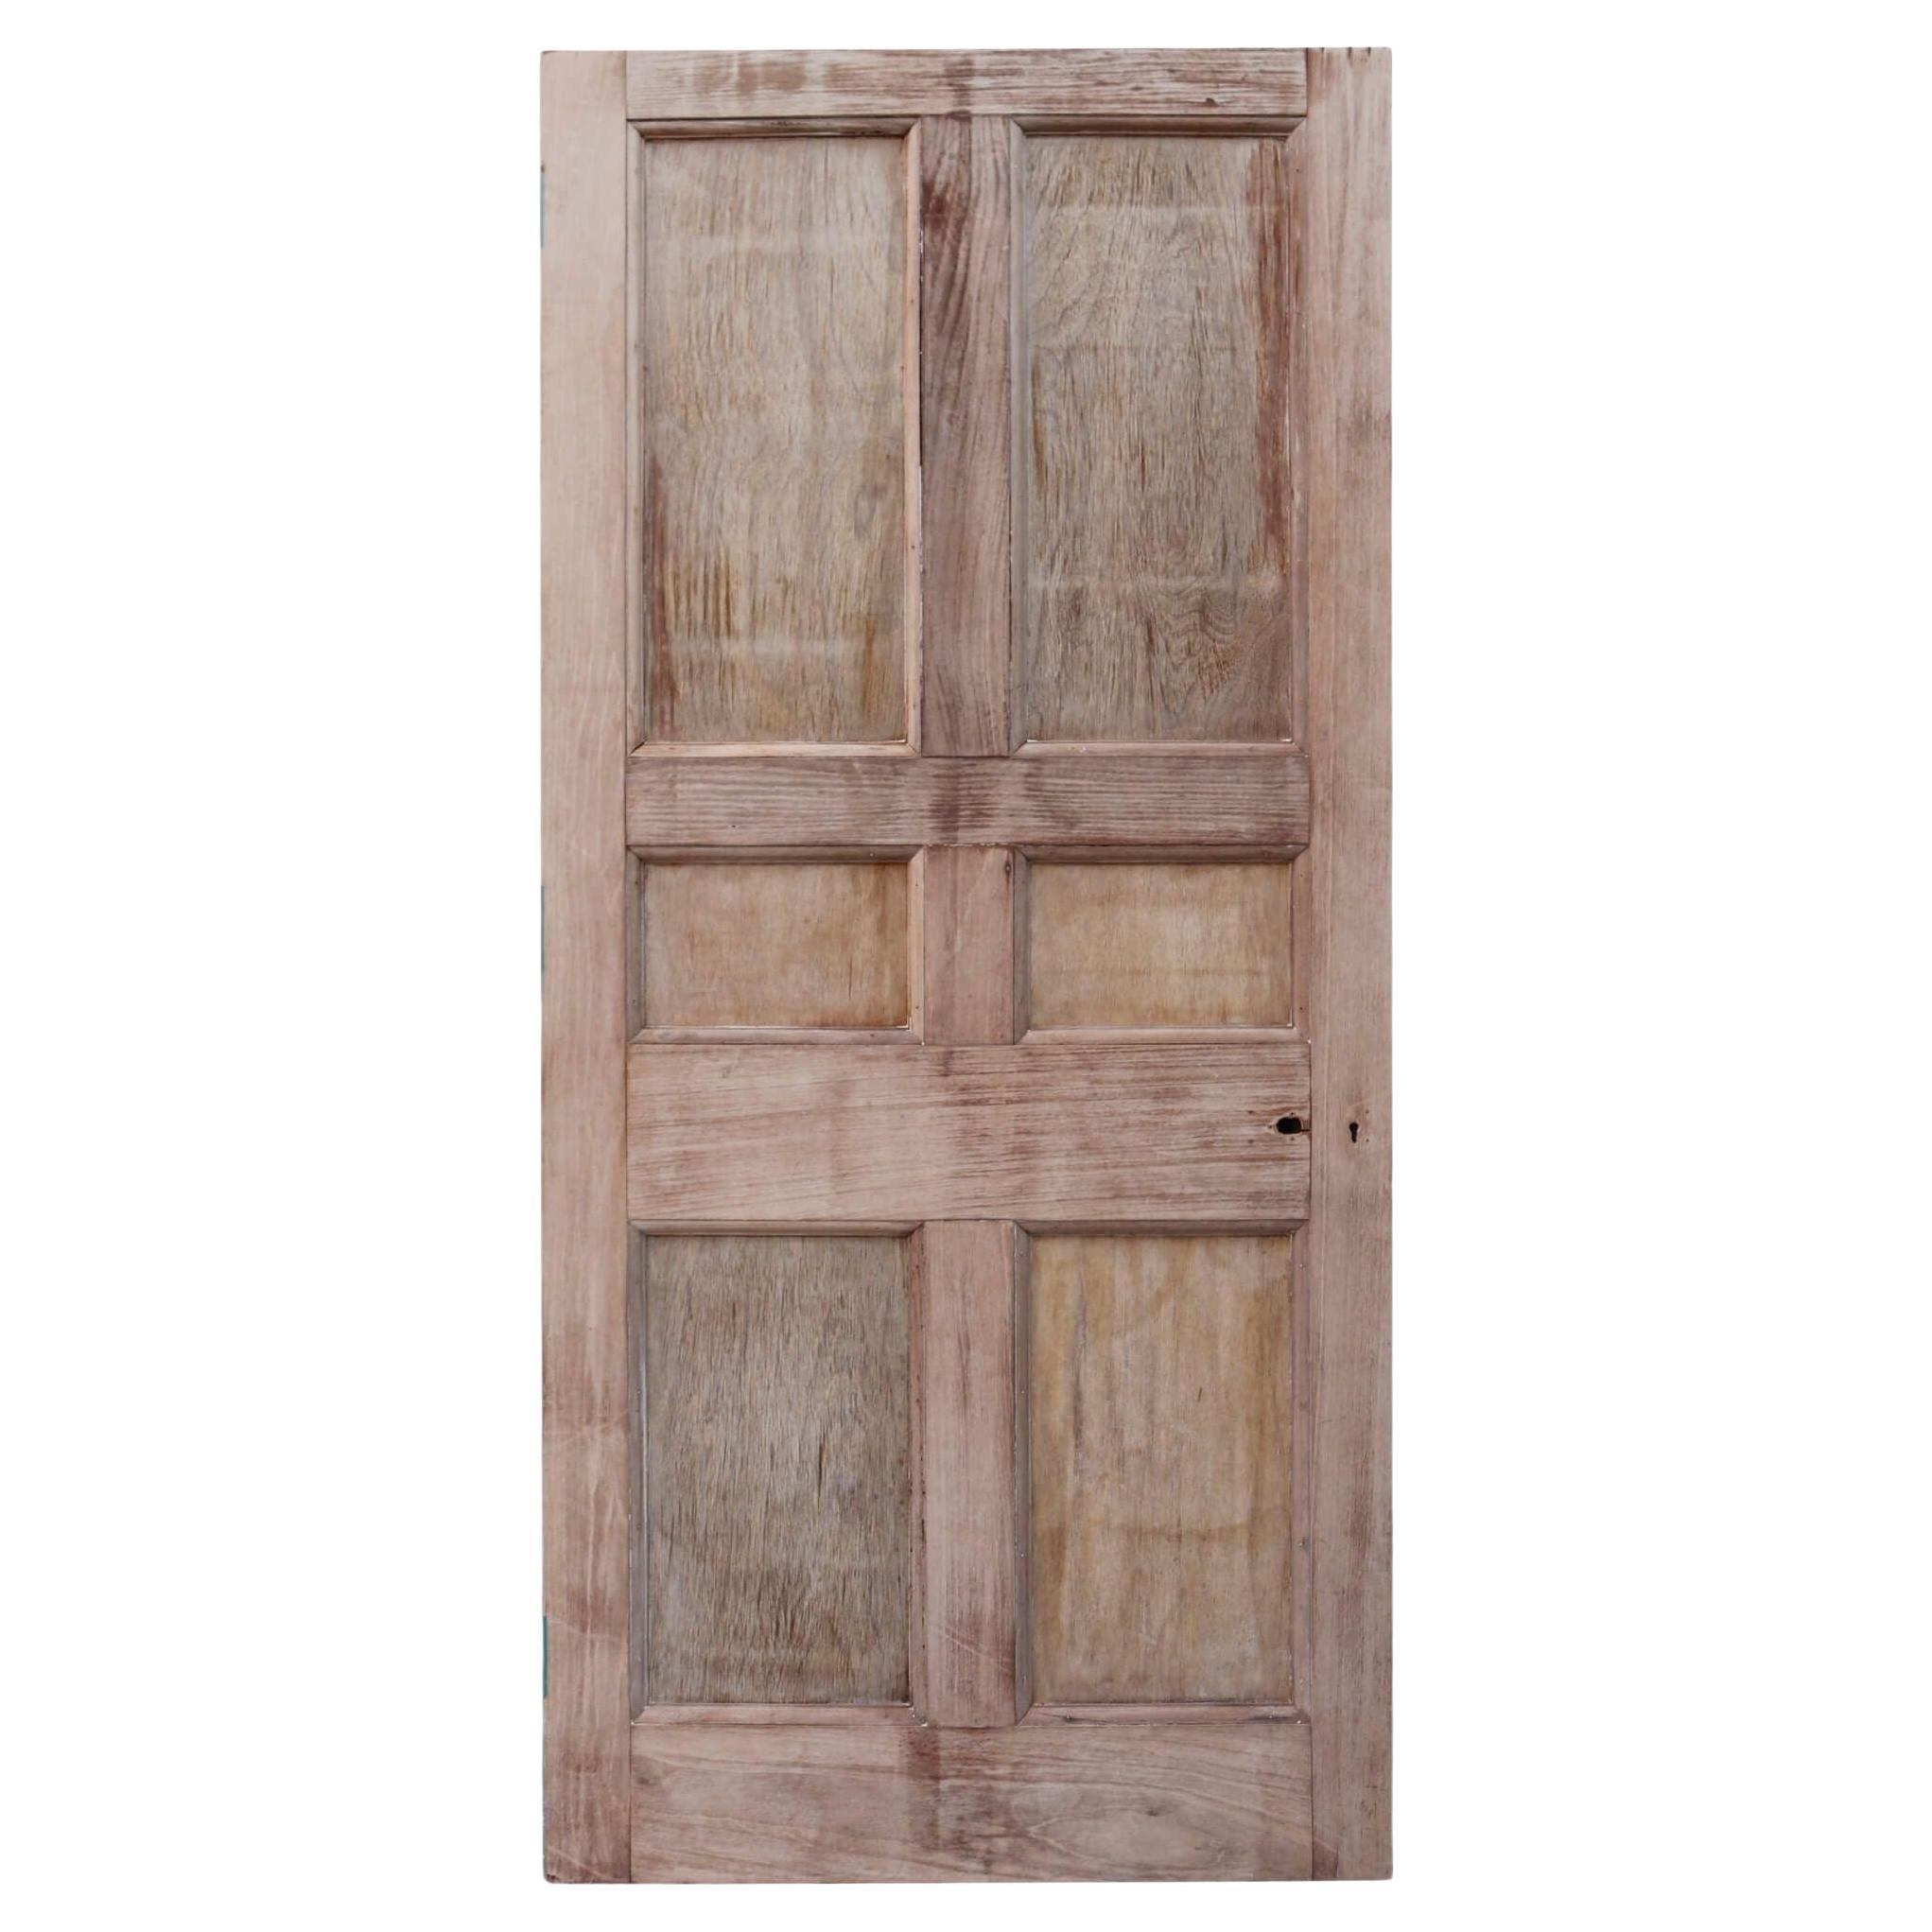 Antique 6 Panel Wooden Door For Sale